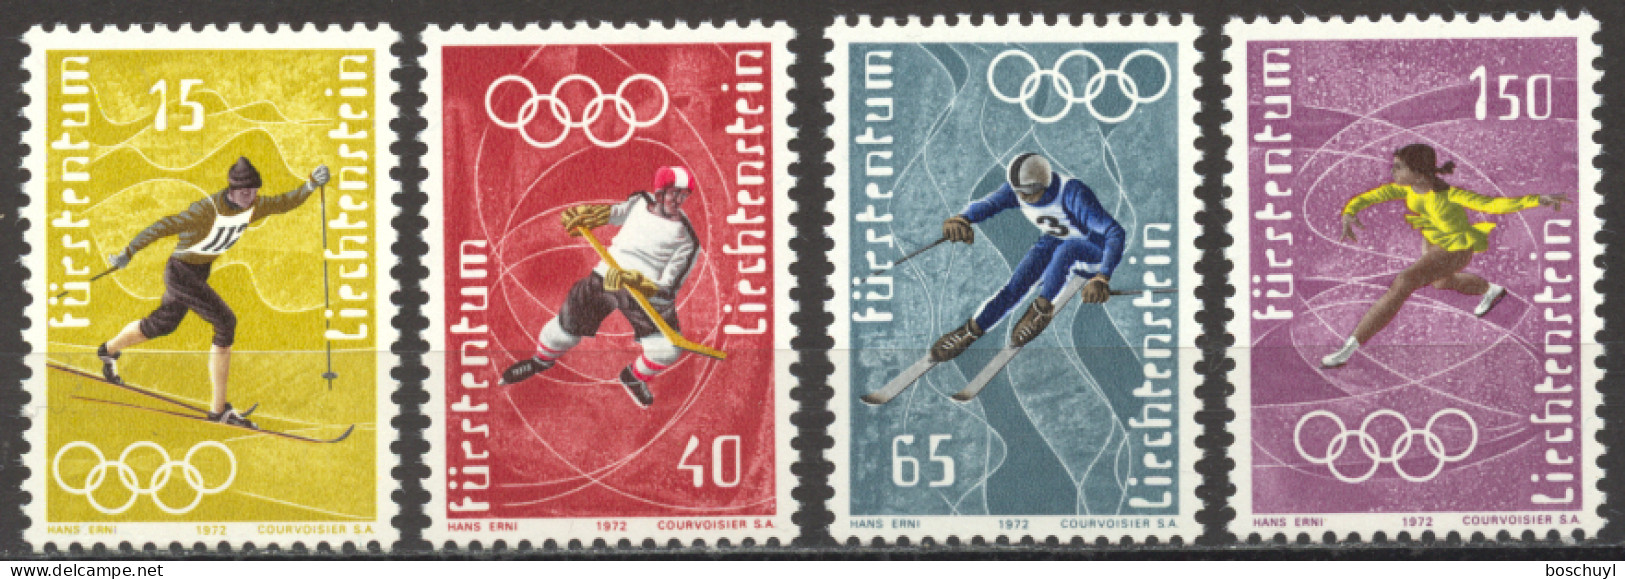 Liechtenstein, 1971, Olympic Winter Games Sapporo, Sports, MNH, Michel 551-554 - Unused Stamps